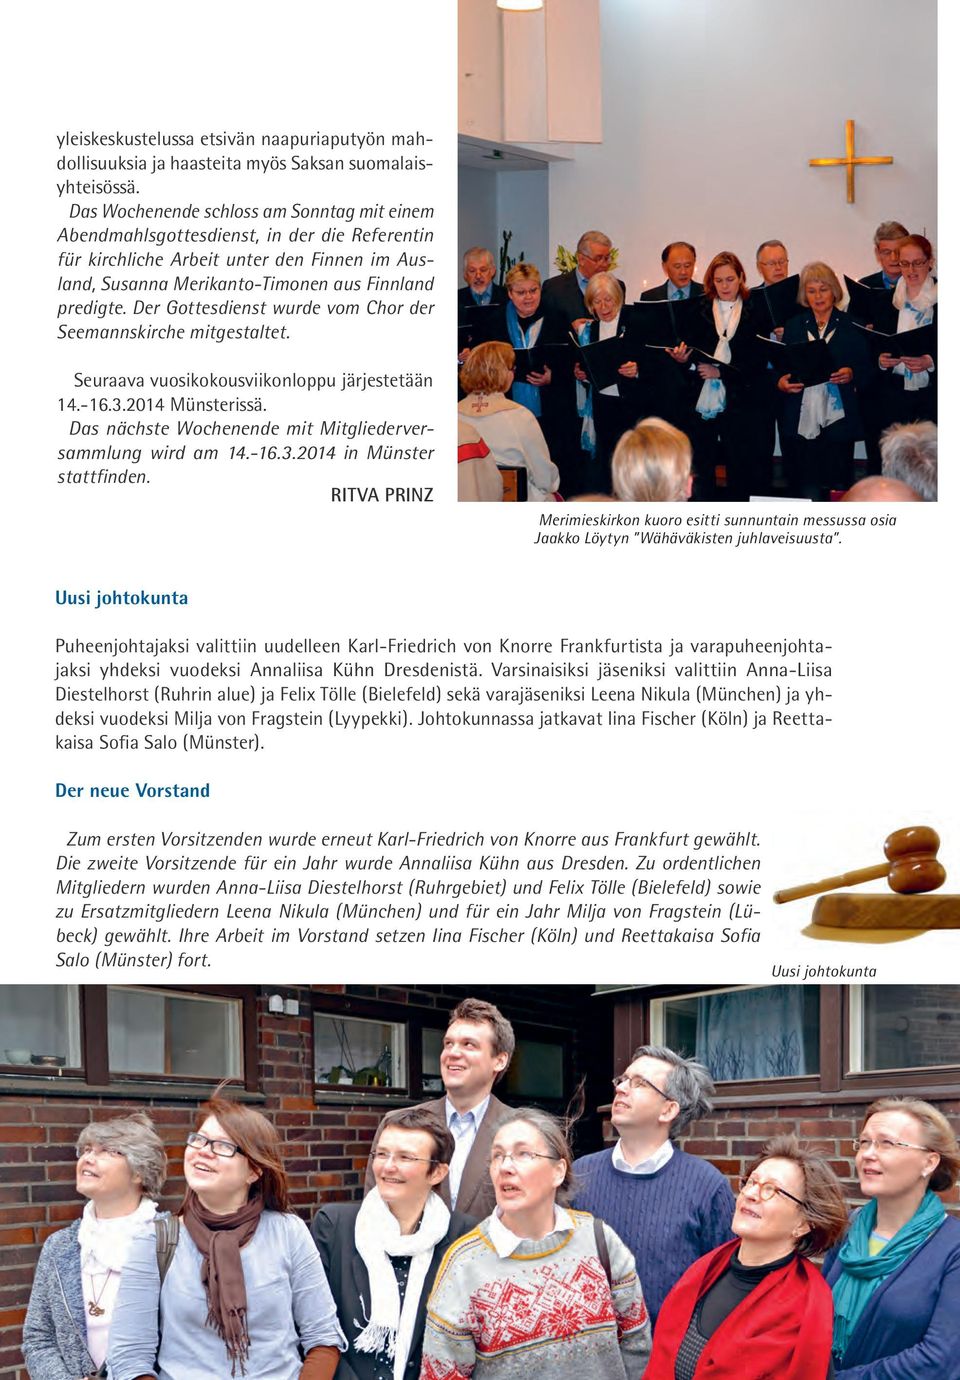 Der Gottesdienst wurde vom Chor der Seemannskirche mitgestaltet. Seuraava vuosikokousviikonloppu järjestetään 14.-16.3.2014 Münsterissä. Das nächste Wochenende mit Mitgliederversammlung wird am 14.